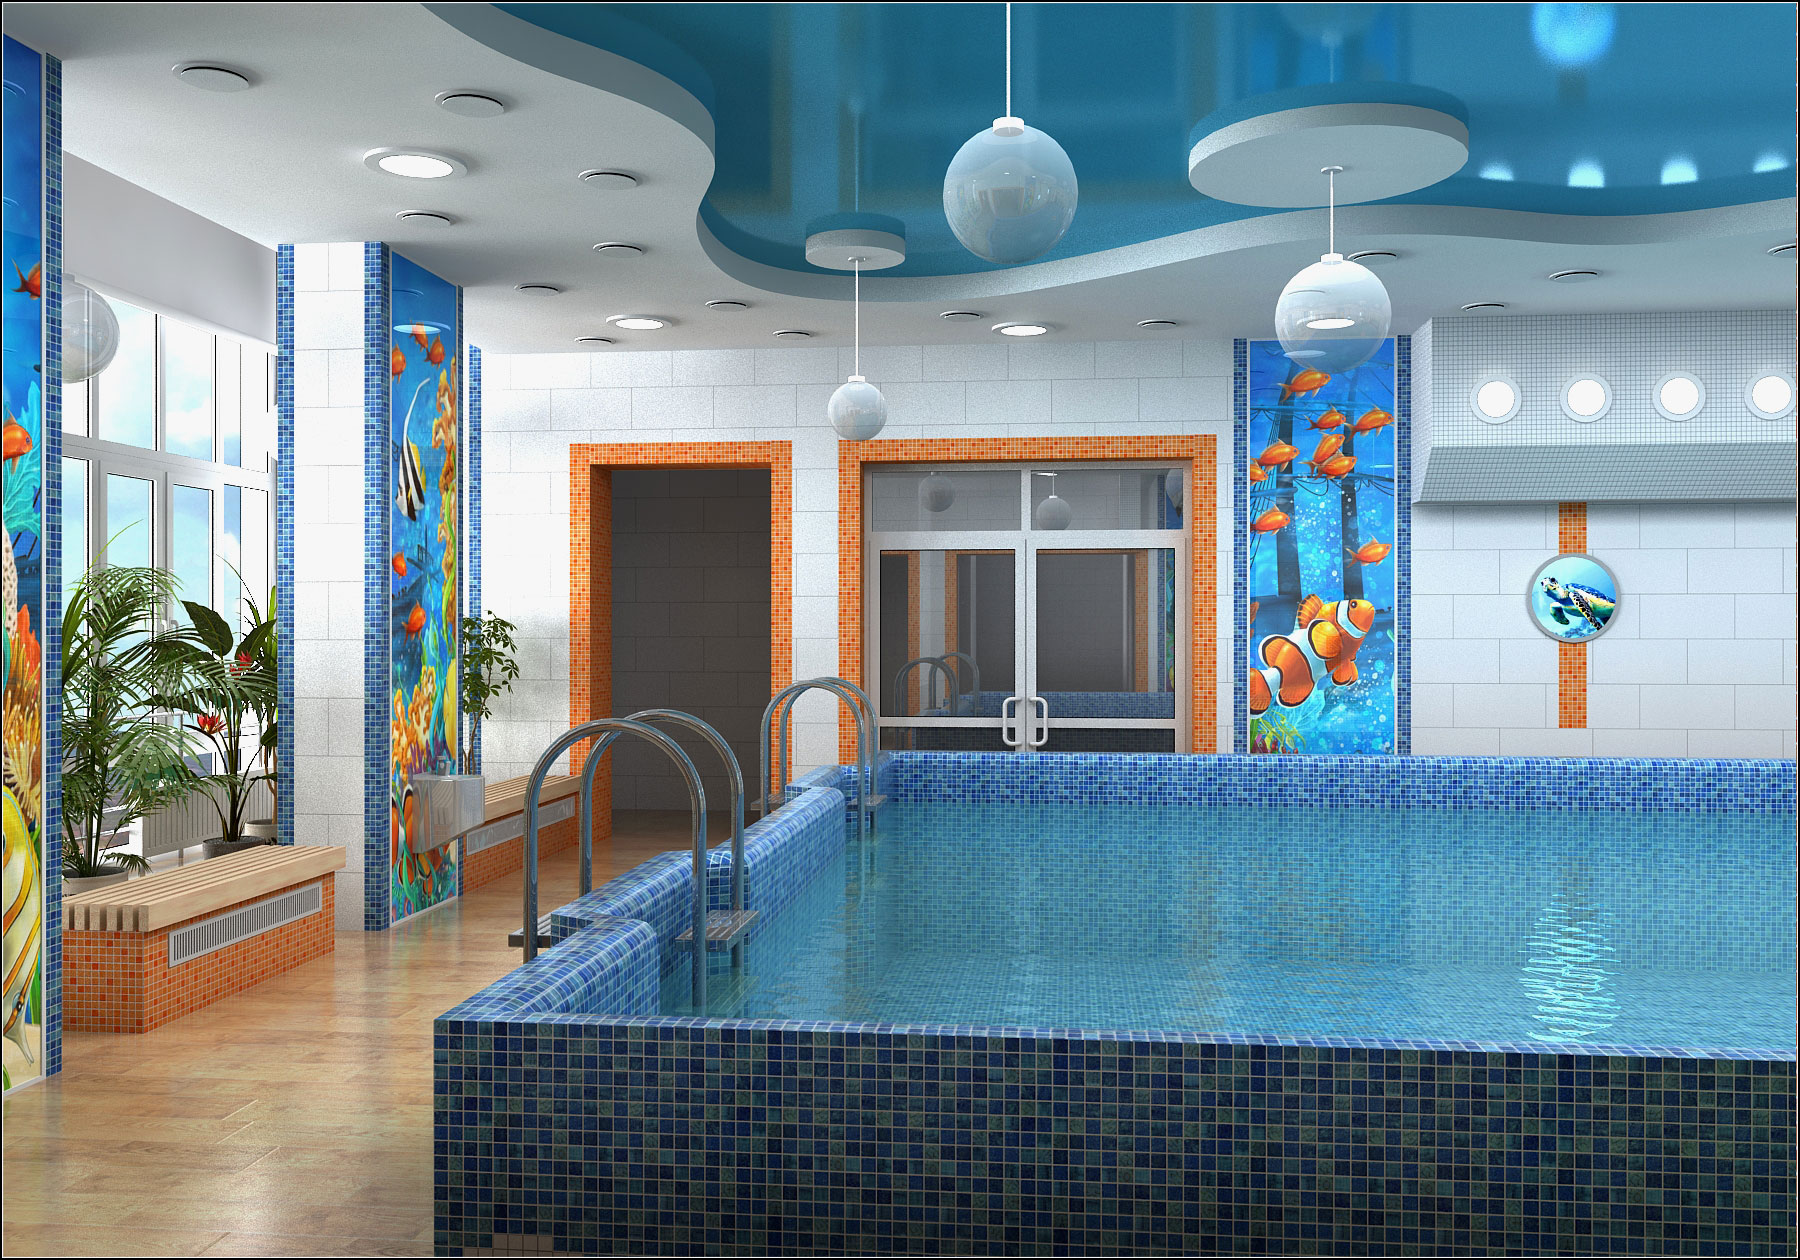 Interior design project for a children's pool in Chernihiv in 3d max vray 1.5 image